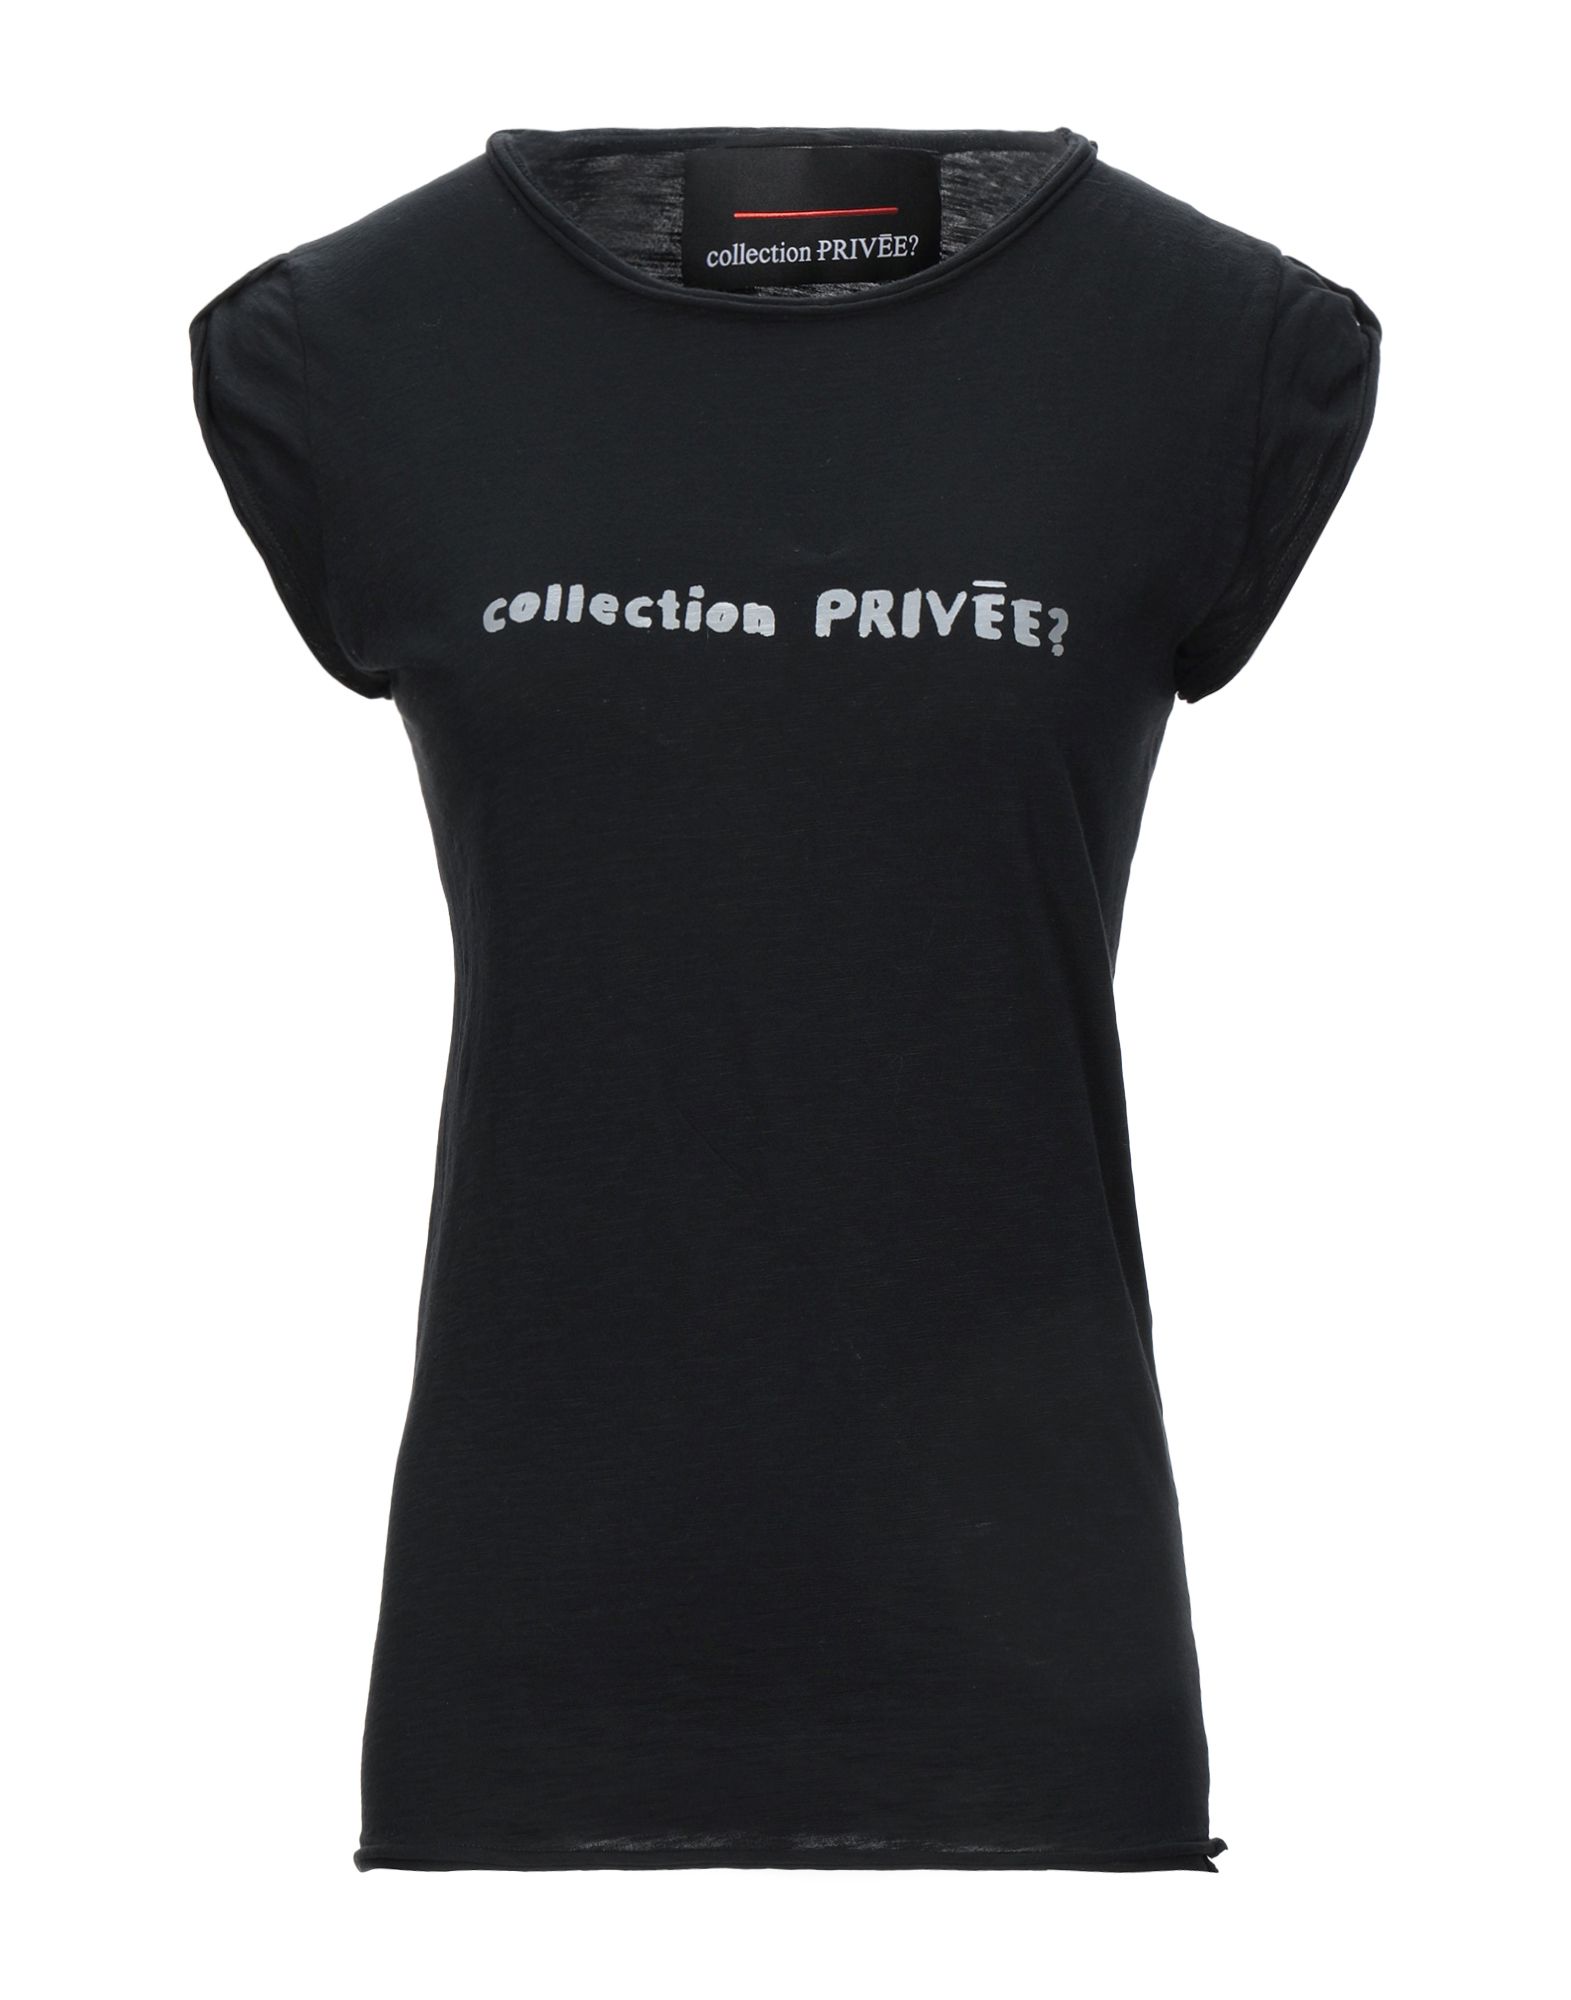 Футболка collection 98. Nika collection футболки. OSTIN Casual Basic collection футболка женская черная.